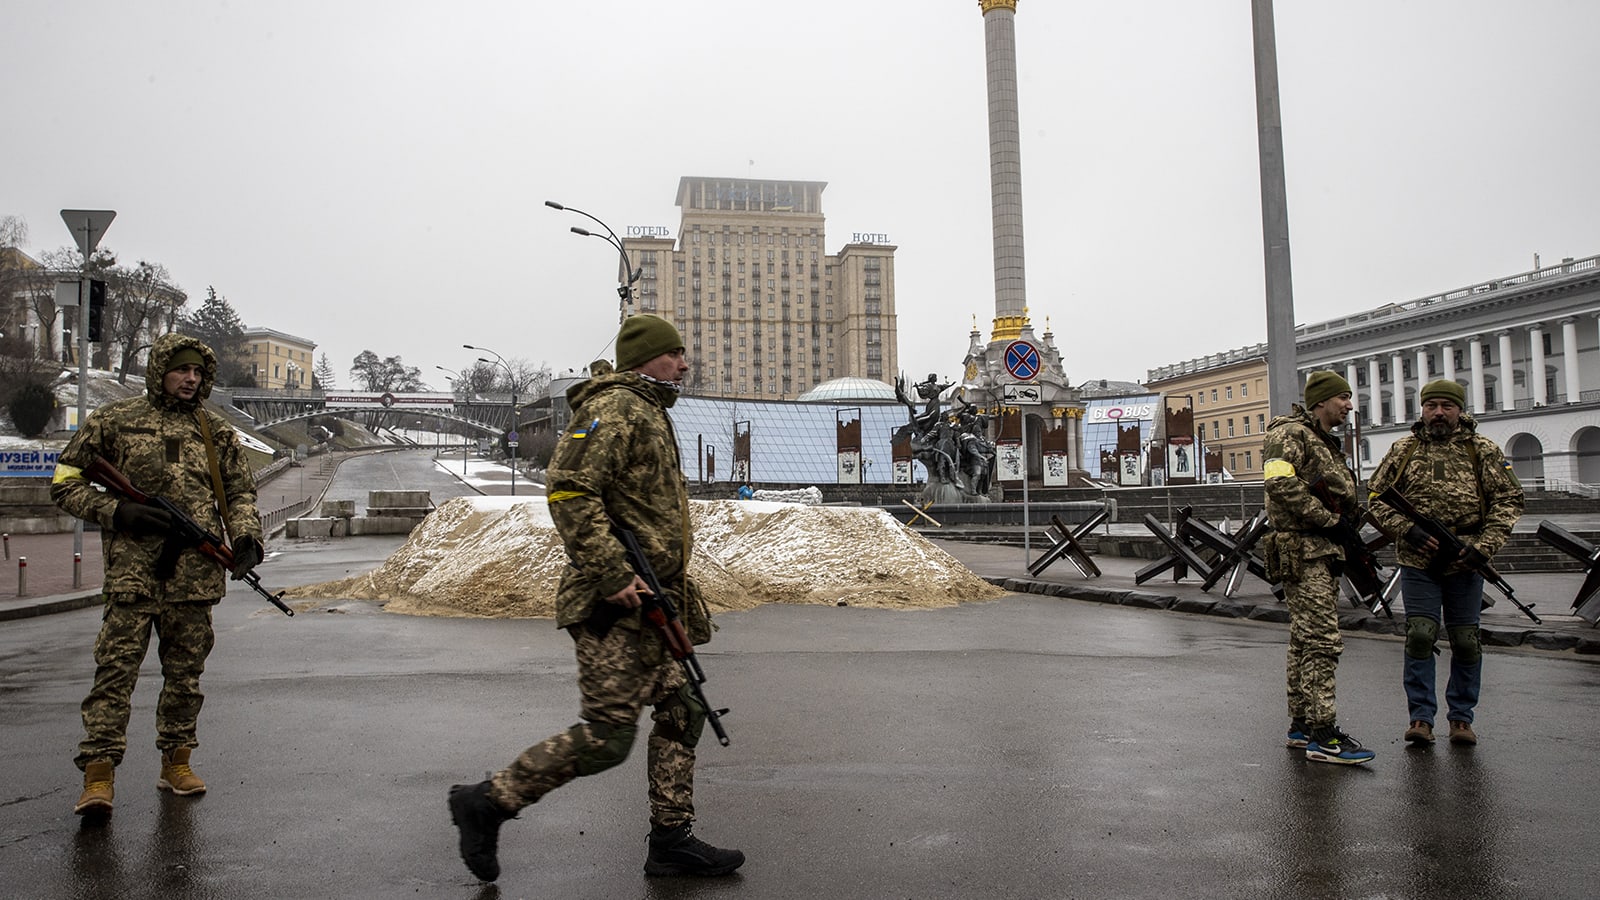 ما دلالات الزي "العسكري" الذي يرتديه رئيس أوكرانيا وما رسالته الضمنية؟